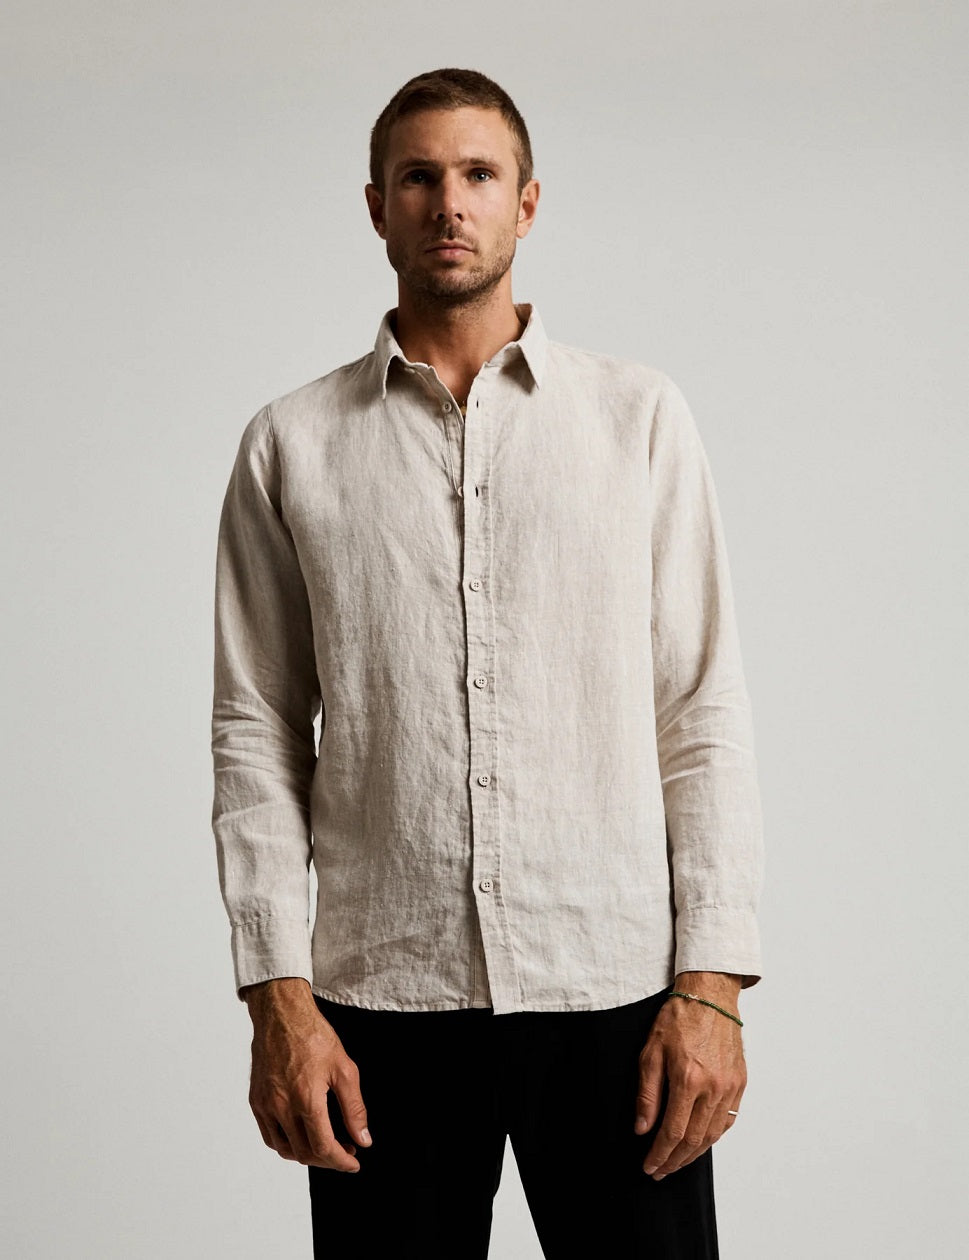 Mr Simple Linen Long Sleeve Shirt - Natural